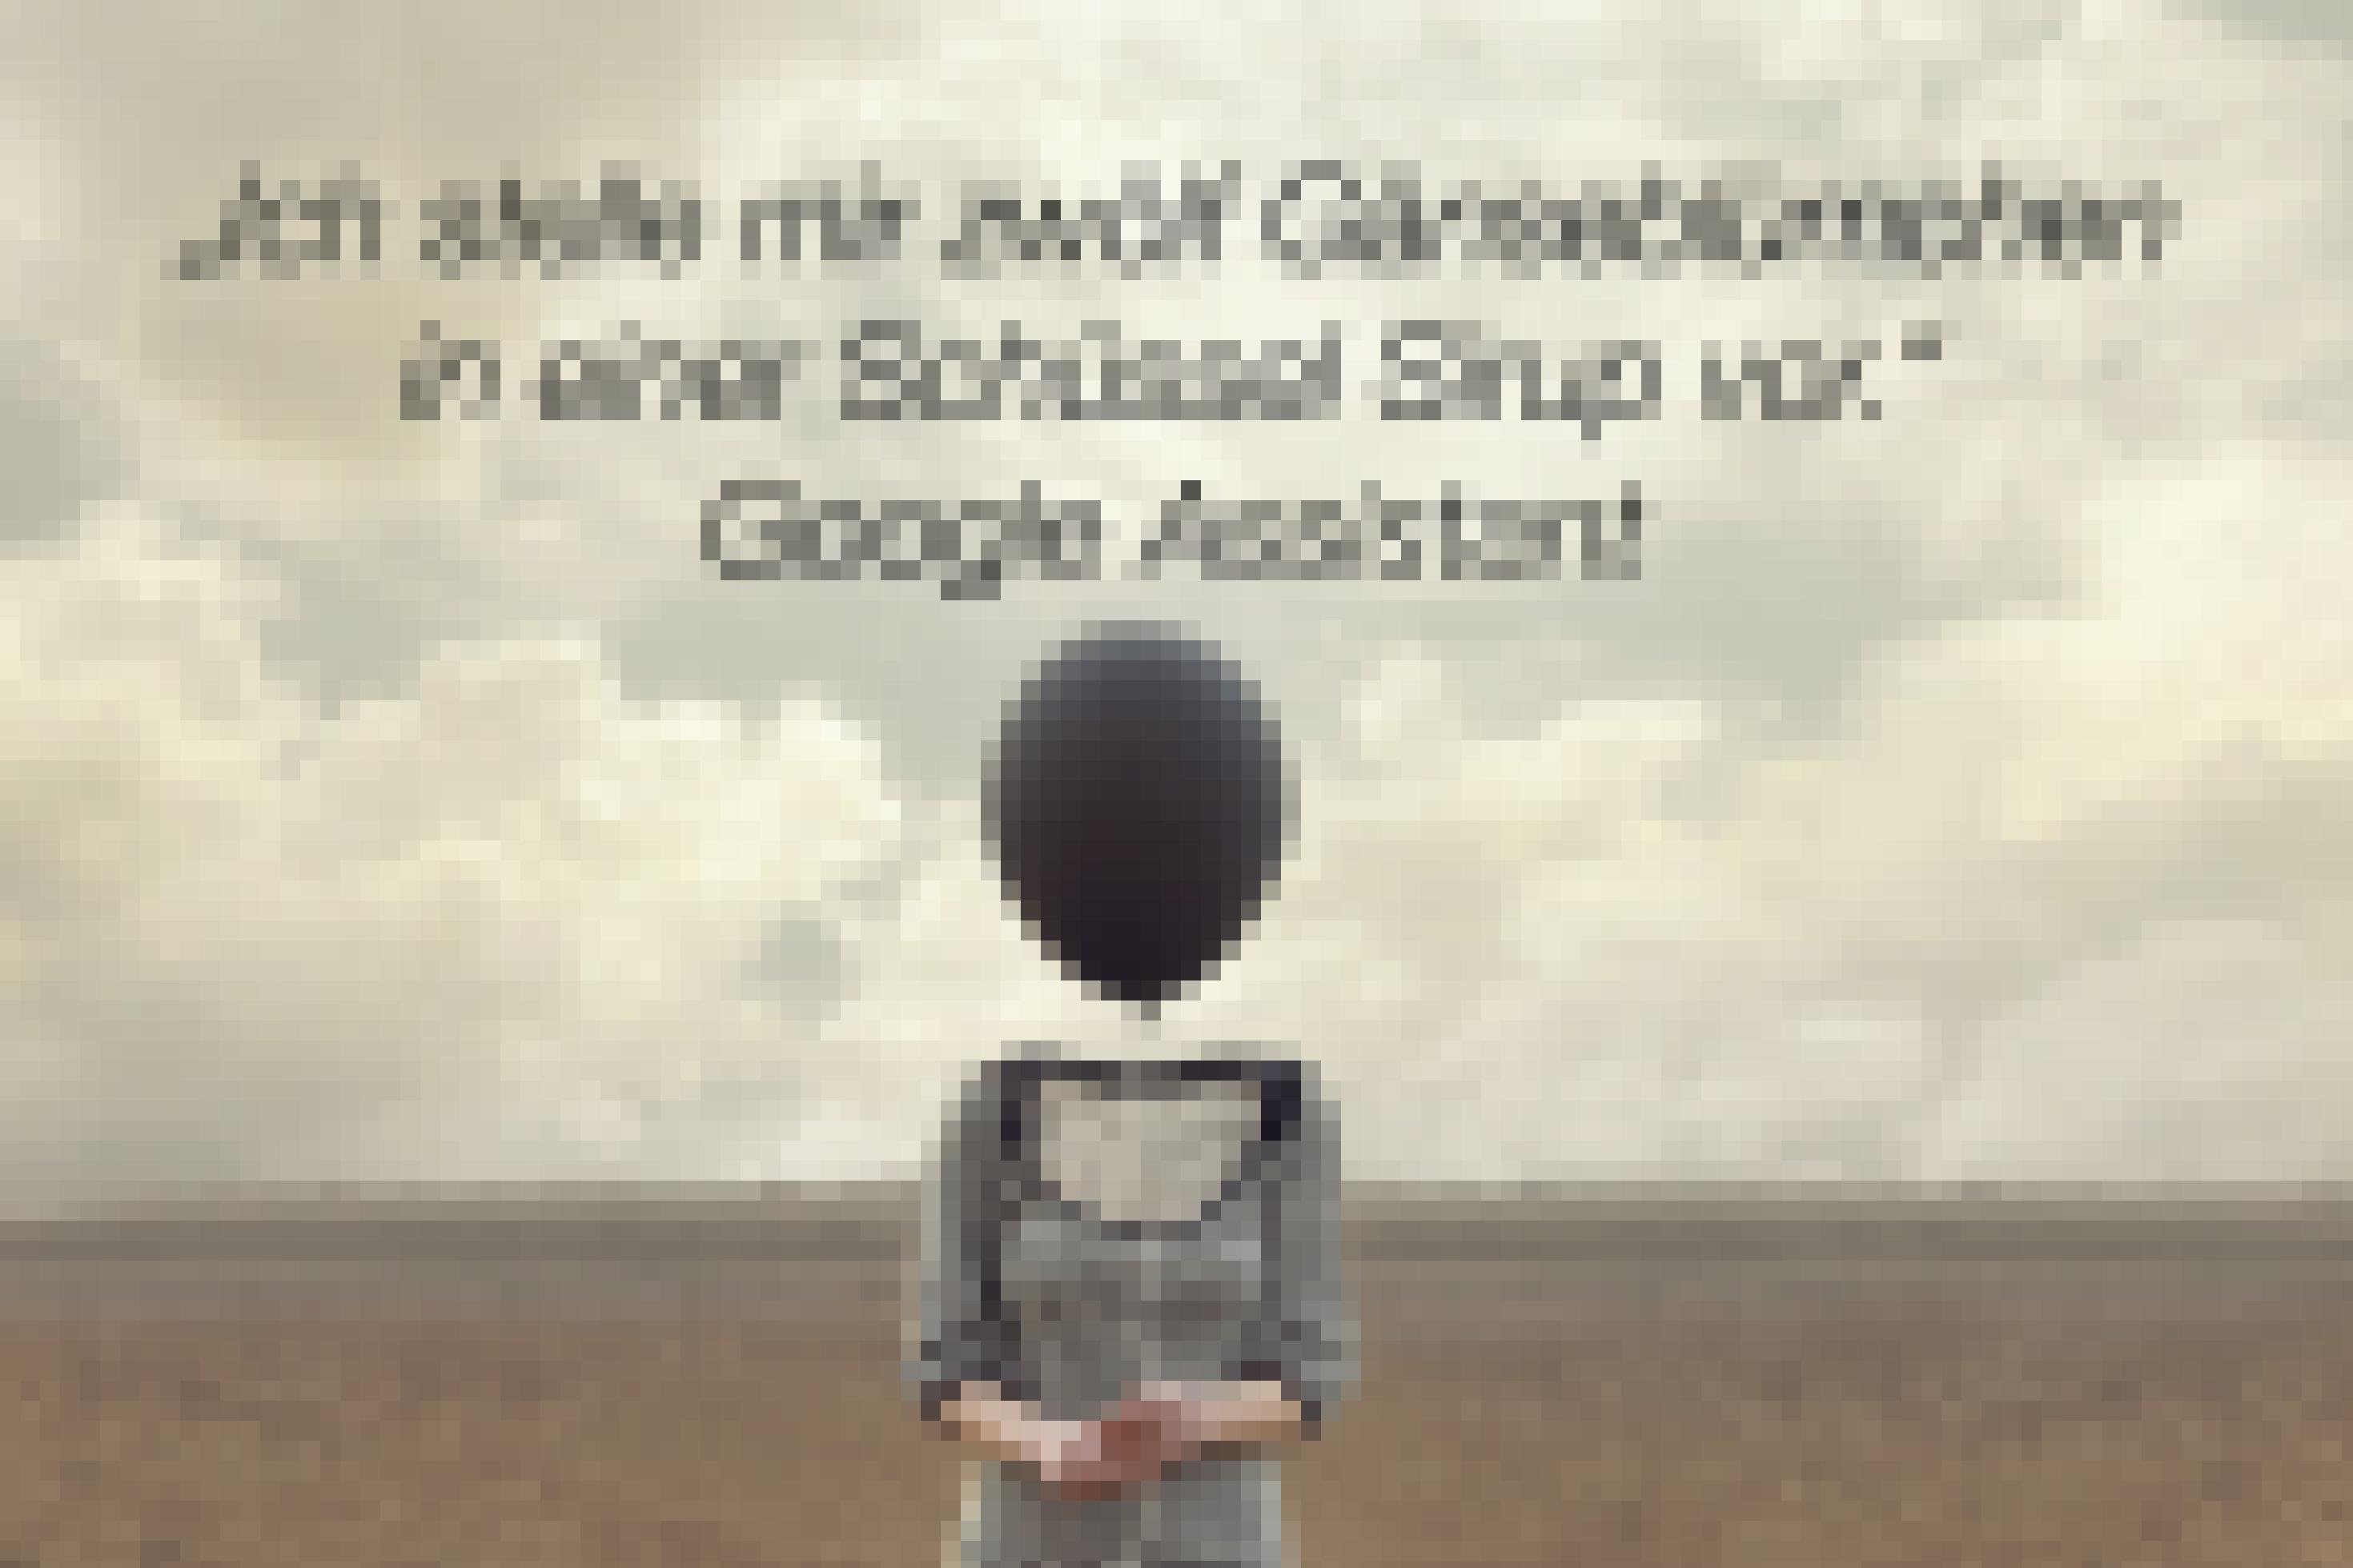 Man sieht eine Frau im grau-weiß-gestreiften Kleid in der Wüste stehen. Sie hat keinen Kopf. Sie hält einen Luftballon in der Hand. Über ihr steht folgende Schrift: „Ich stelle mir zwölf Gänseblümchen in einer Schlüssel Sirup vor.“ Google Assistent